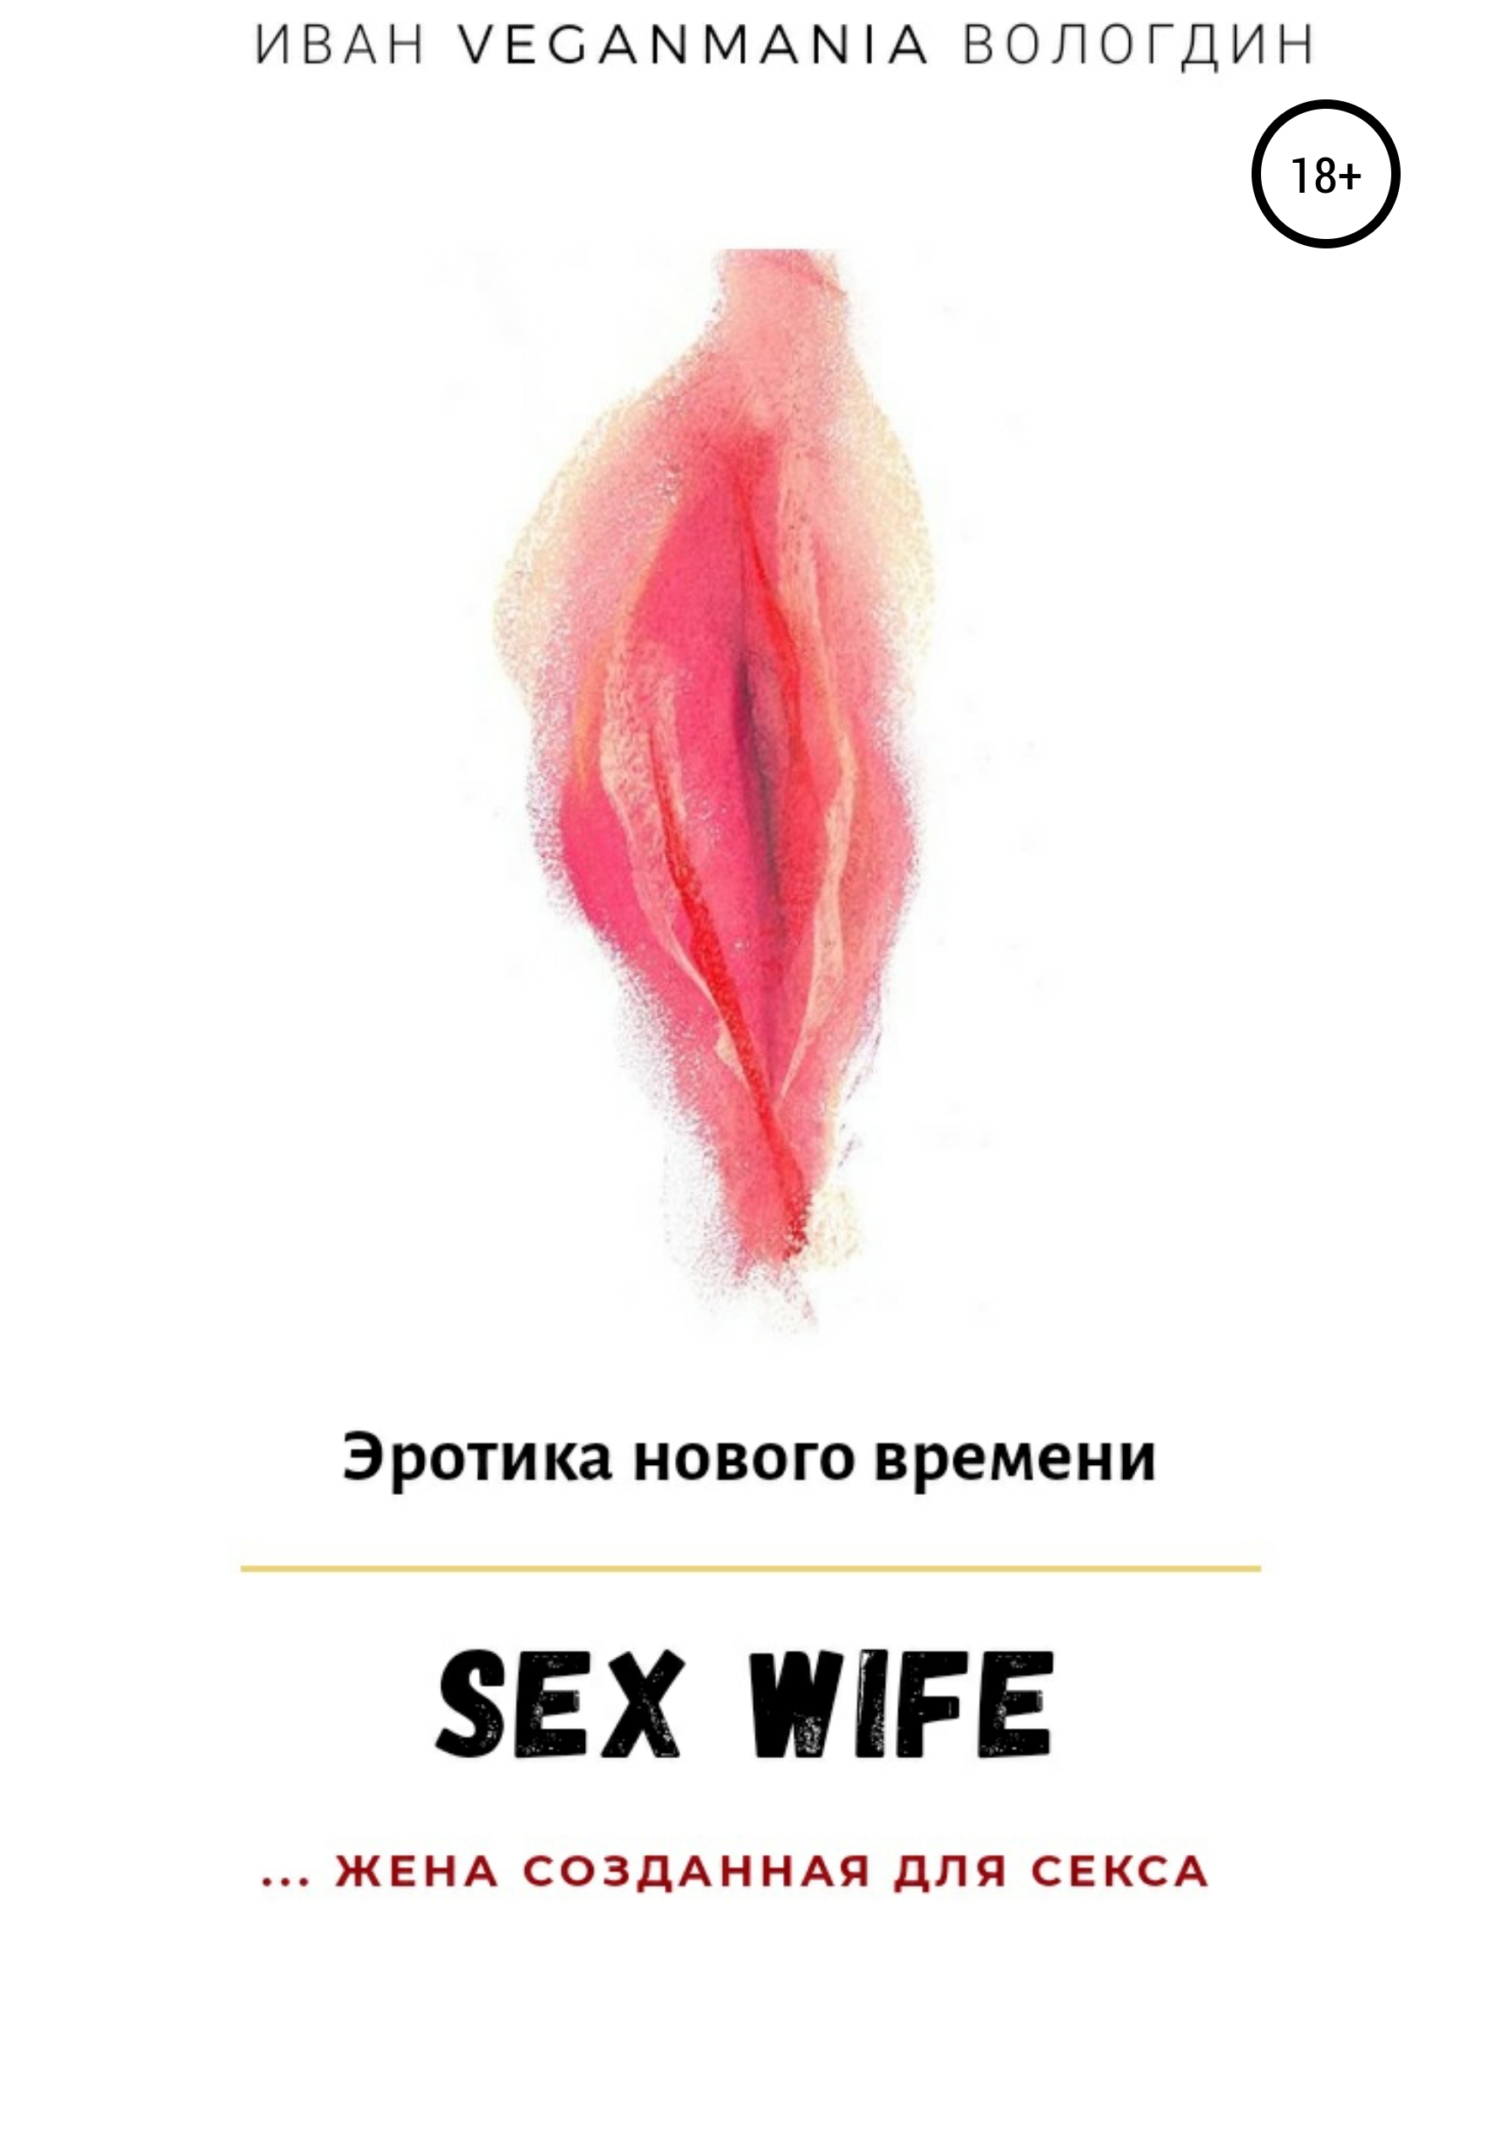 Как сделать из жены сексвайф